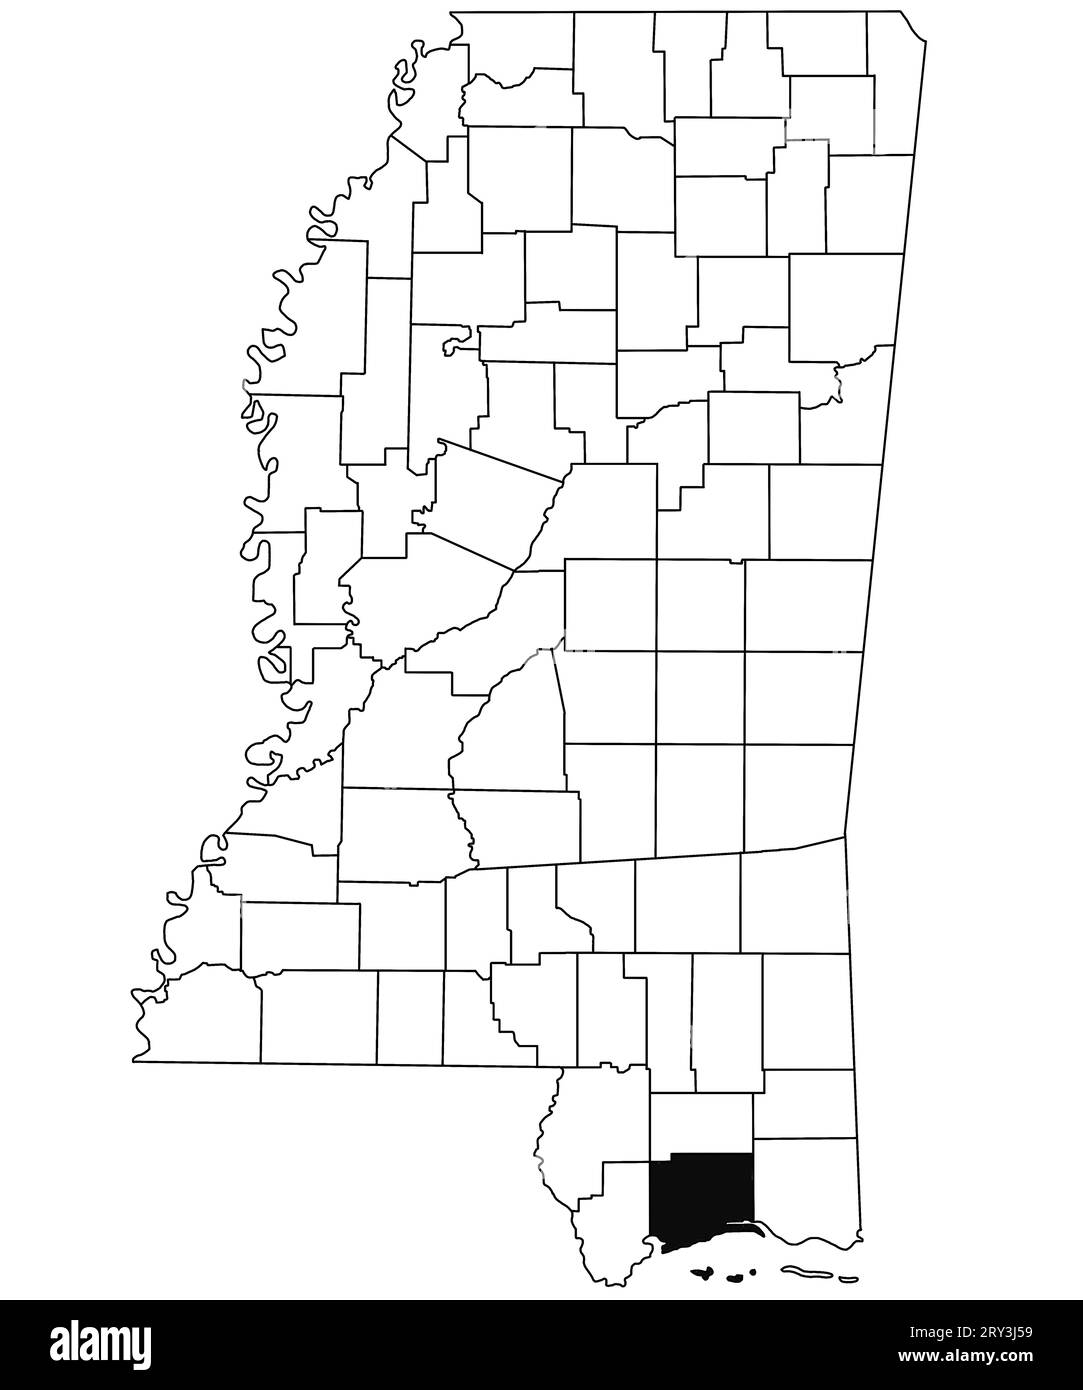 Mappa della contea di Harrison nello stato del Mississippi su sfondo bianco. Mappa singola della contea evidenziata in nero sulla mappa del Mississippi. Stati Uniti d'AM Foto Stock